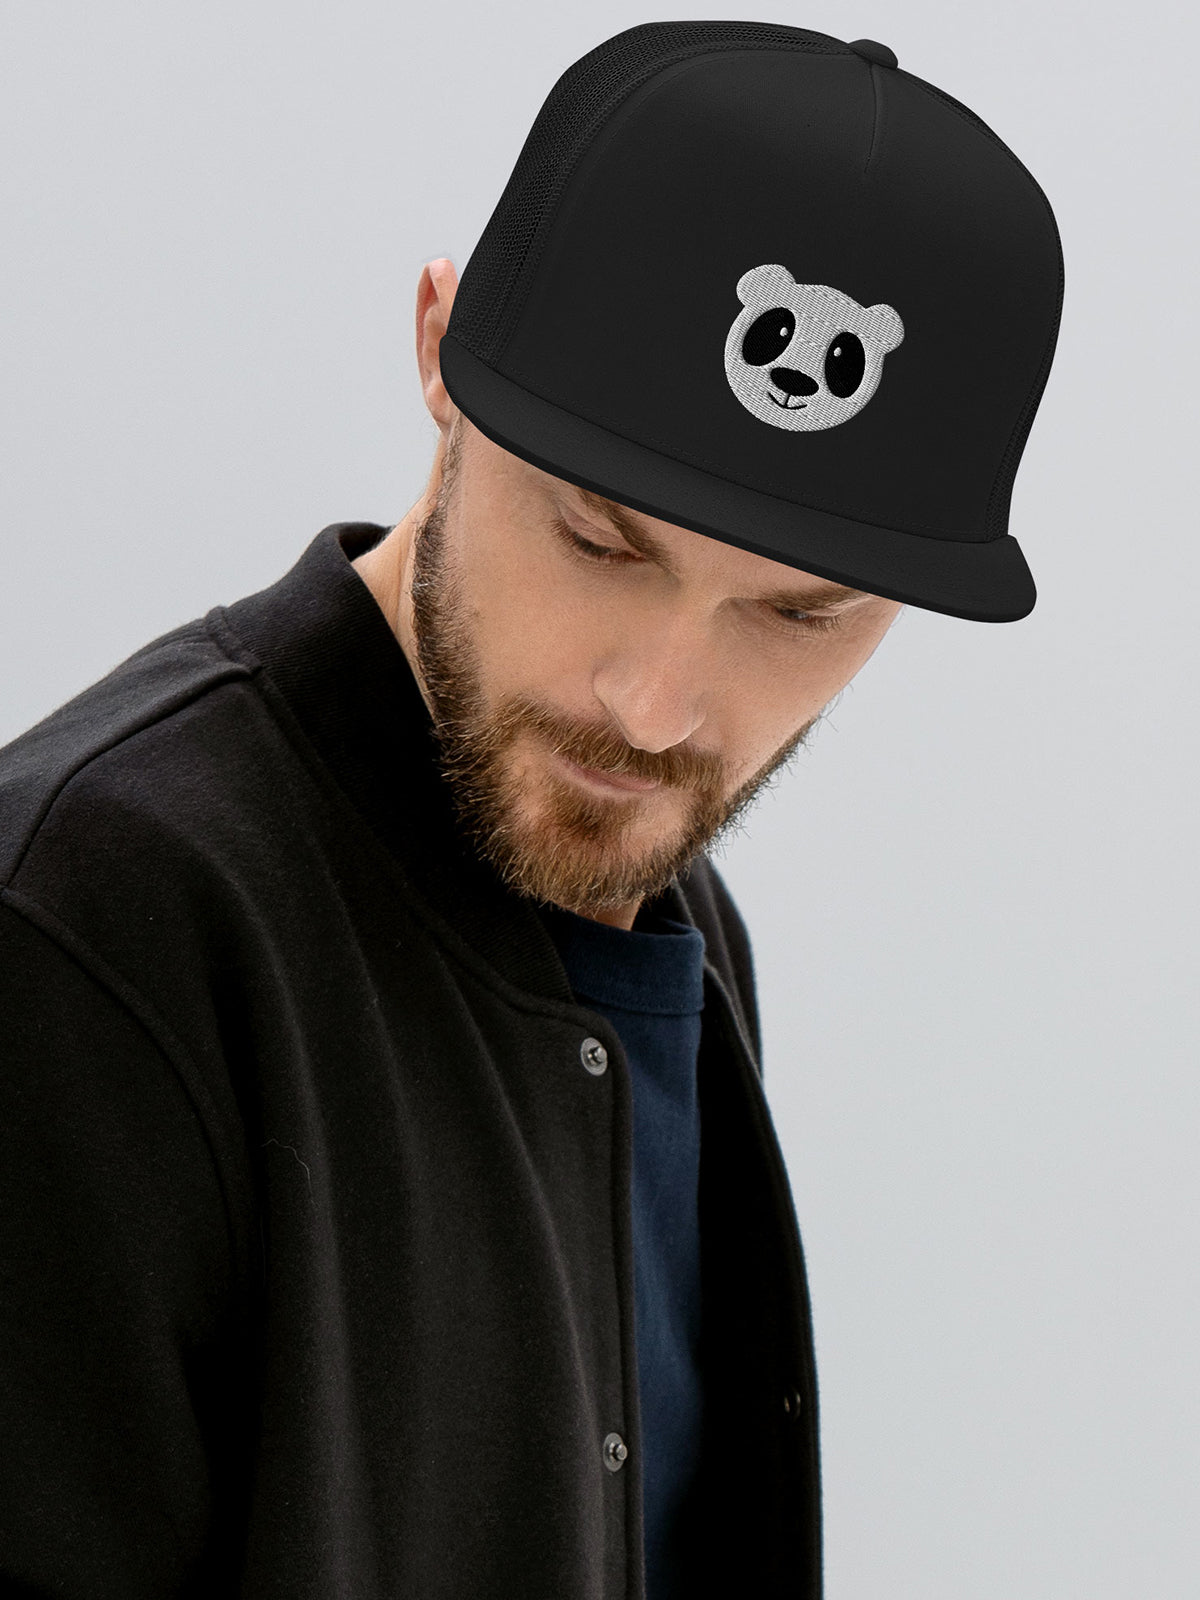 Panda Trucker Hat